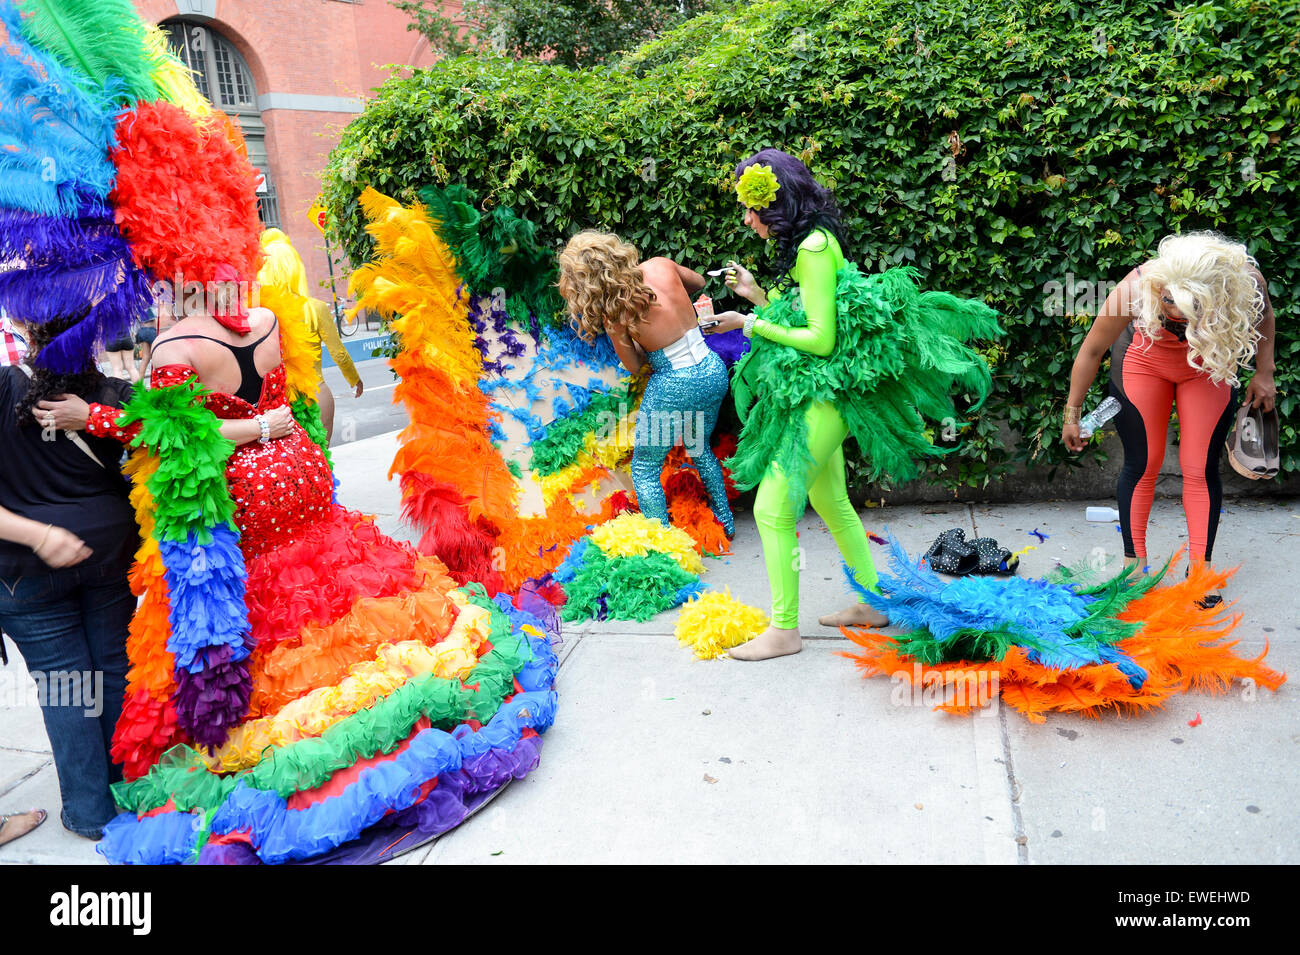 La VILLE DE NEW YORK, USA - 30 juin 2013 : Drag Queens en costumes arc-en-ciel dramatique de la ville de célébrer la gay pride annuelle de l'événement. Banque D'Images